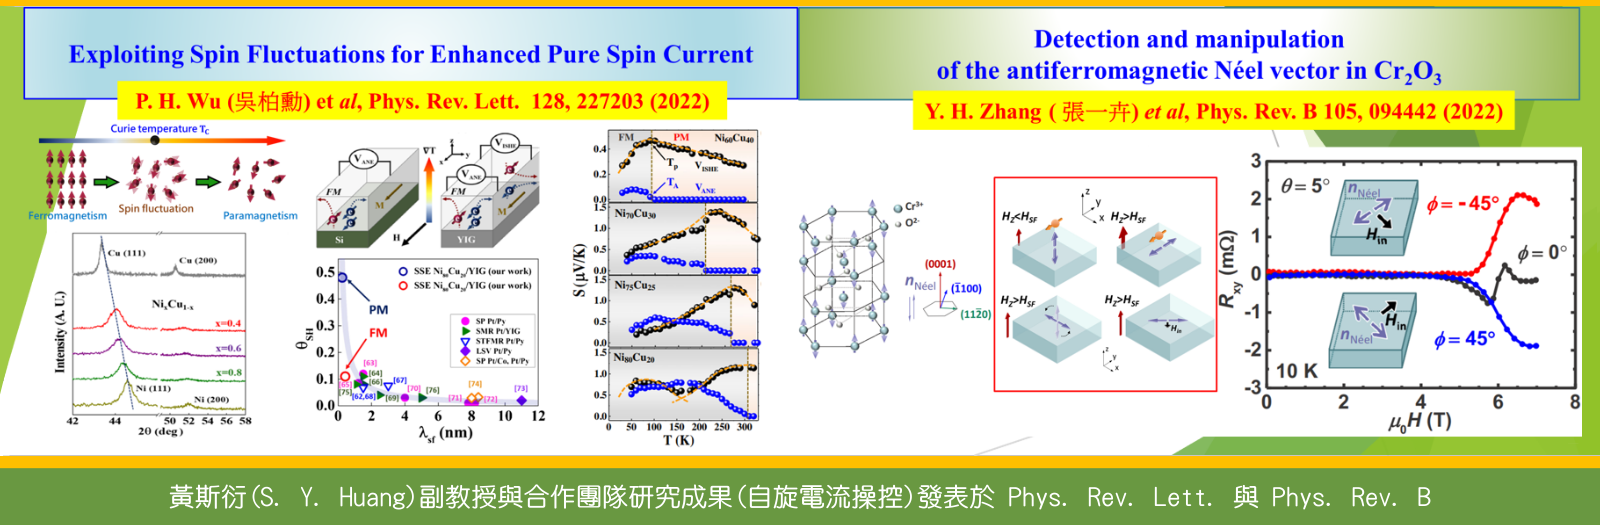 黃斯衍 (S. Y. Huang) 副教授與合作團隊研究成果(自旋電流操控)發表於 Phys. Rev. Lett. 與 Phys. Rev. B